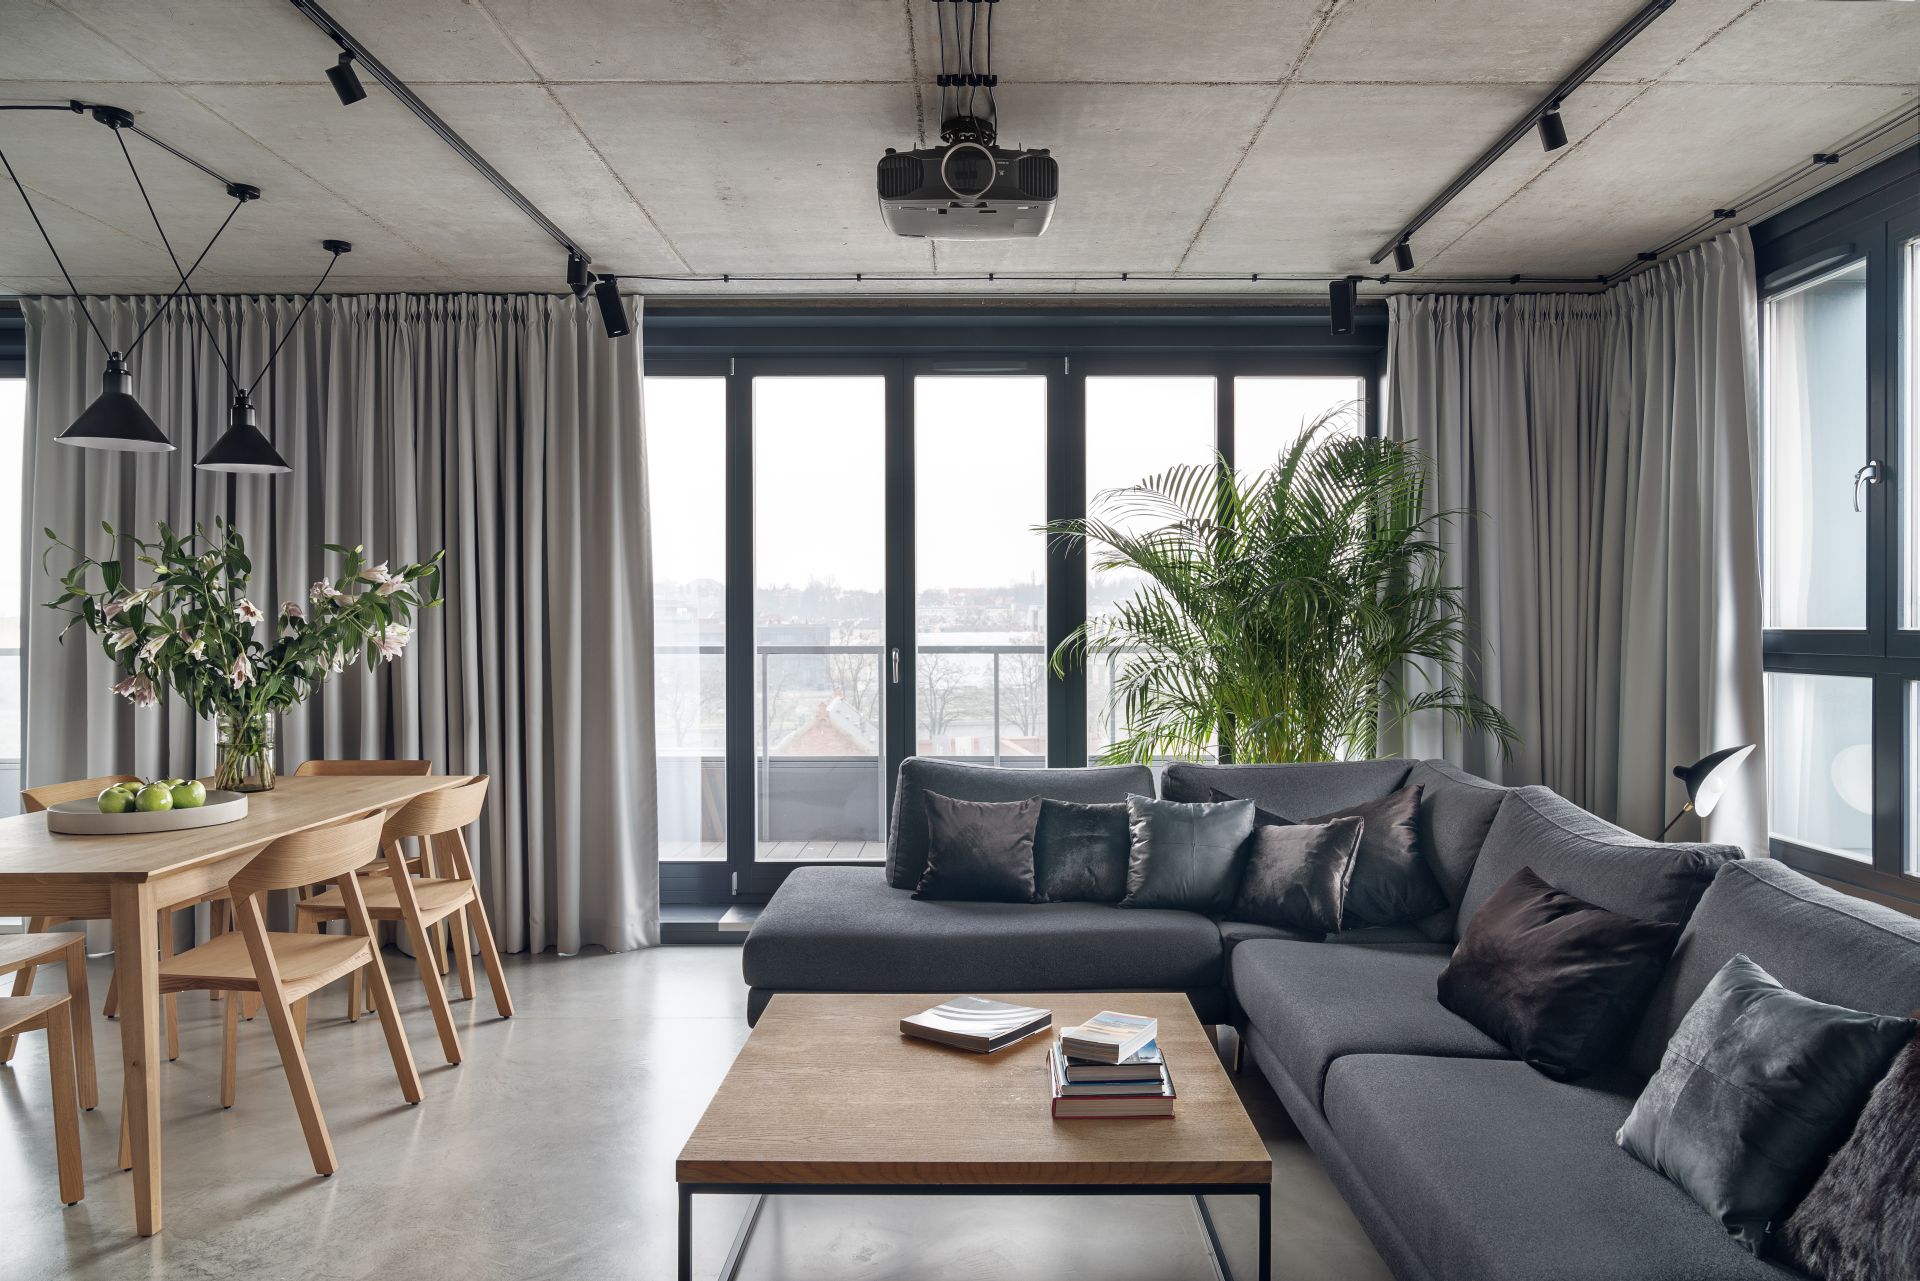 Mieszkanie w stylu loftowym. Projekt wnętrza BLACKHAUS Karol Ciepliński Architekt. Zdjęcia Tom Kurek